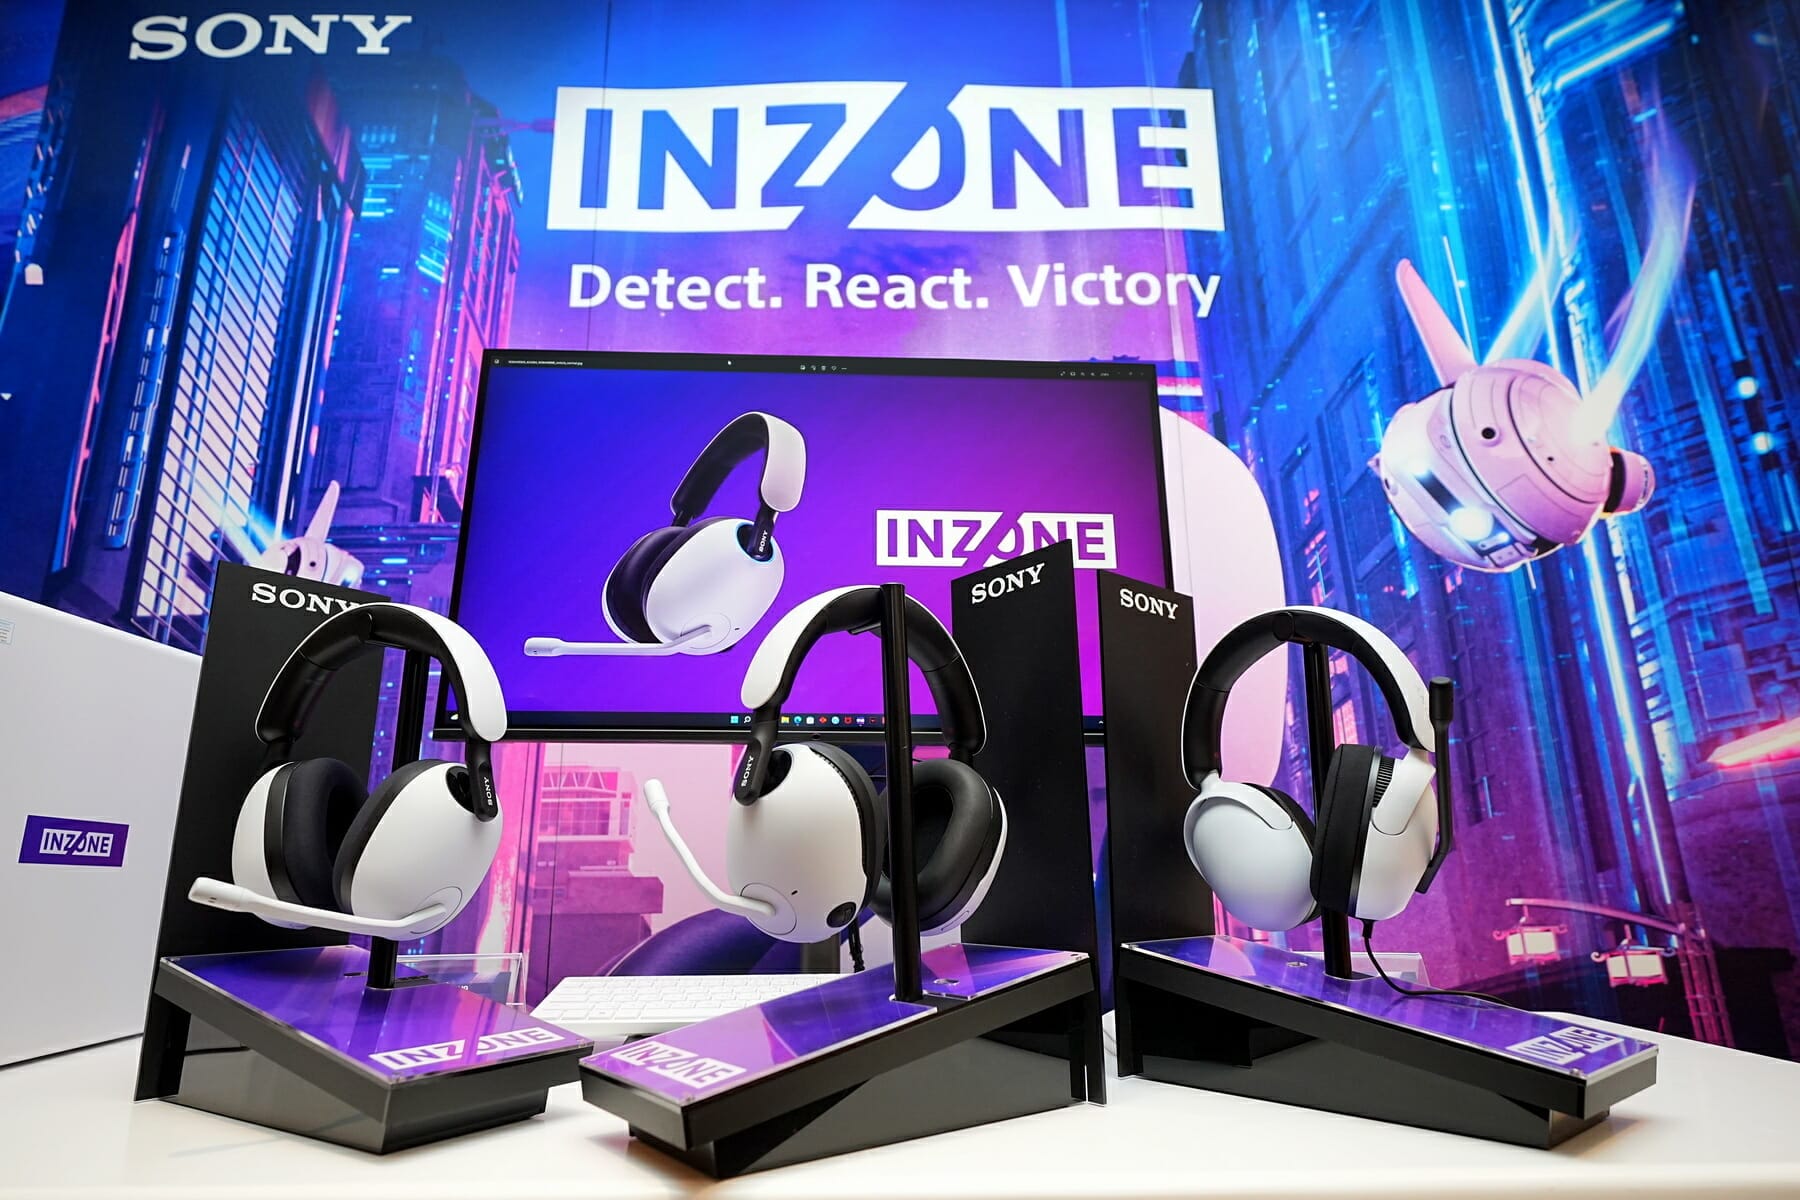 โซนี่ไทยรุกตลาดเกมมิ่งเกียร์ ส่งหูฟังเกมรุ่นแรกภายใต้แบรนด์ “INZONE” โดดเด่นด้วยเทคโนโลยี 360 Spatial Sound ตรวจจับคู่ต่อสู้ได้อย่างแม่นยำ